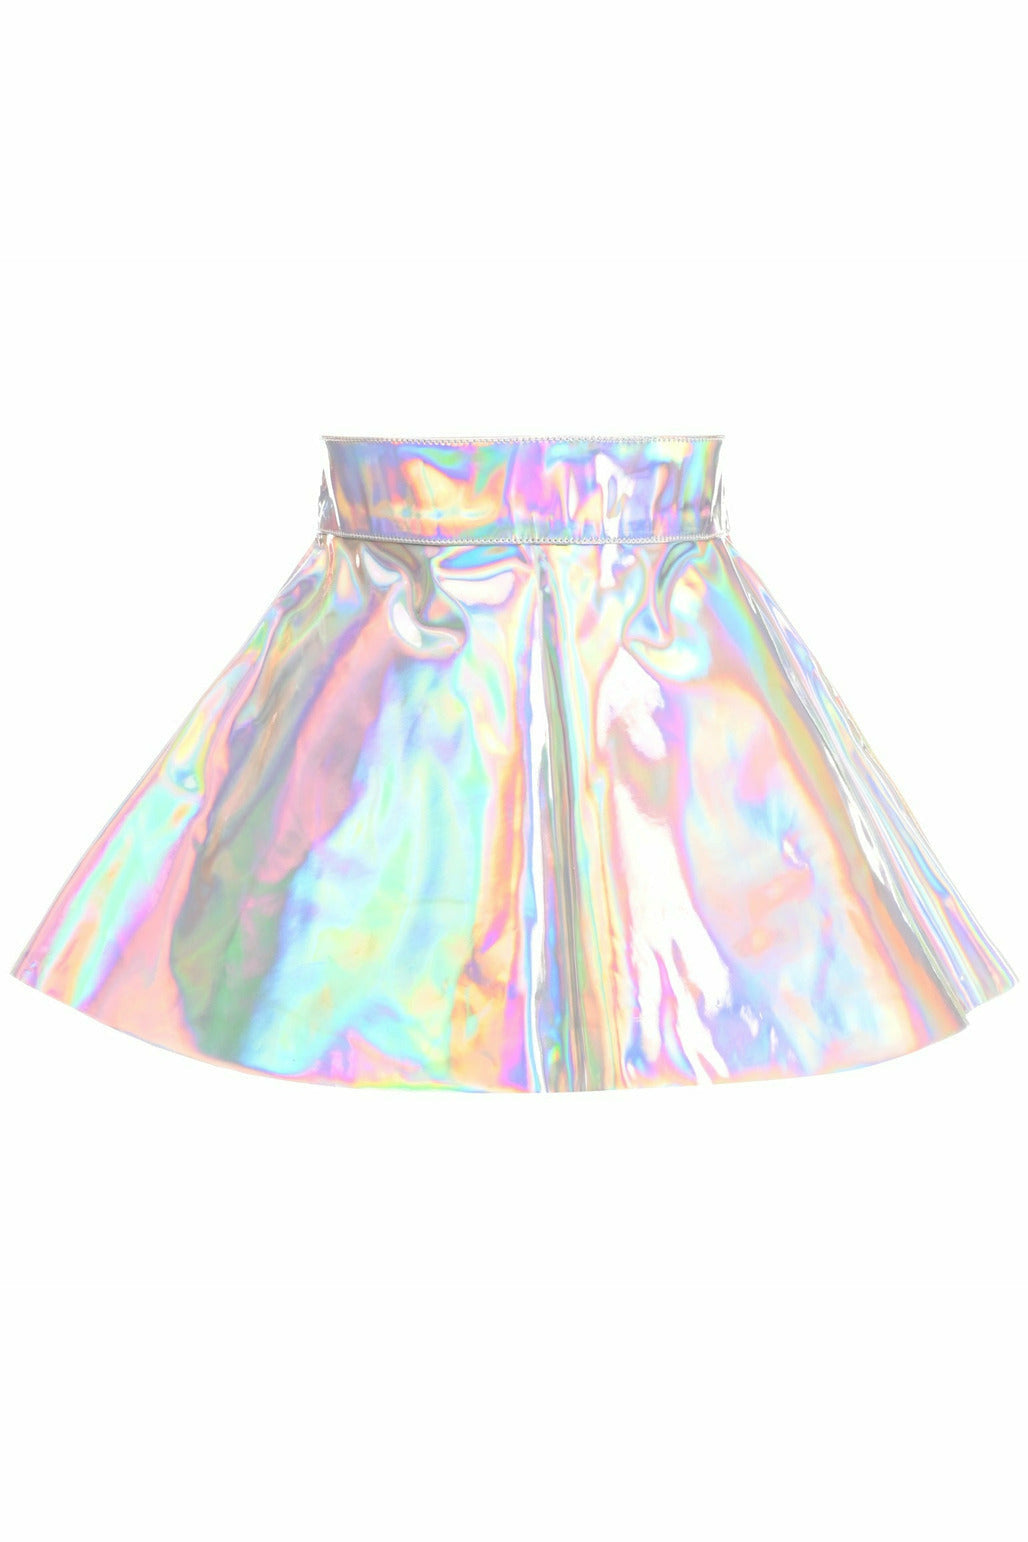 Silver Holo Skater Skirt - Lust Charm 